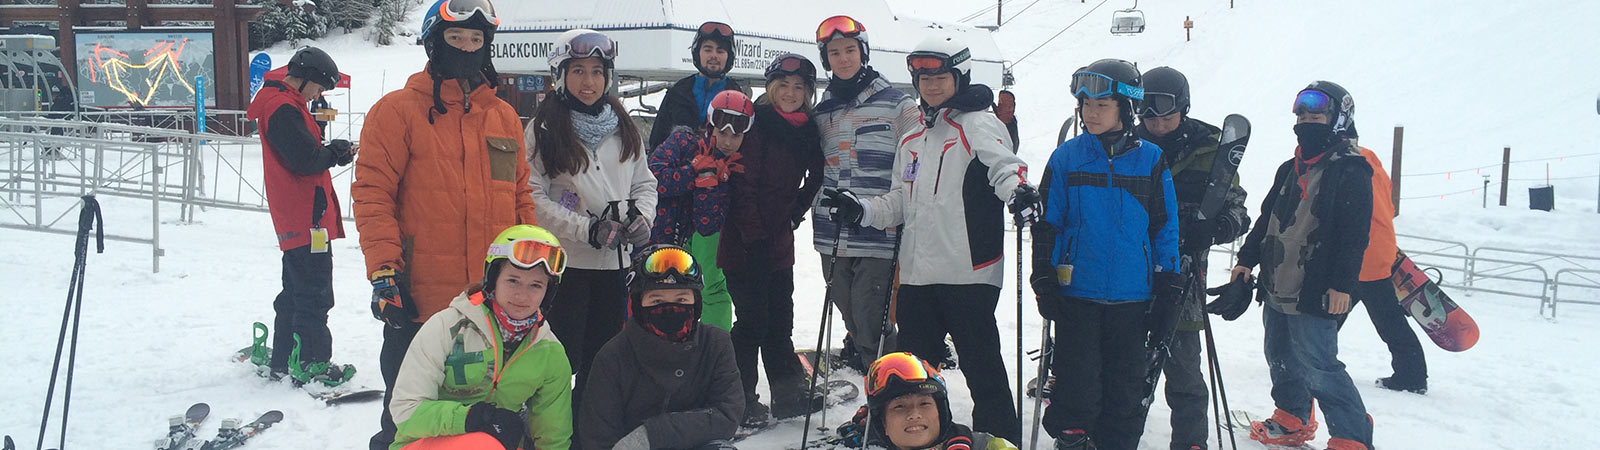 Ski & Snowboard Team 2016